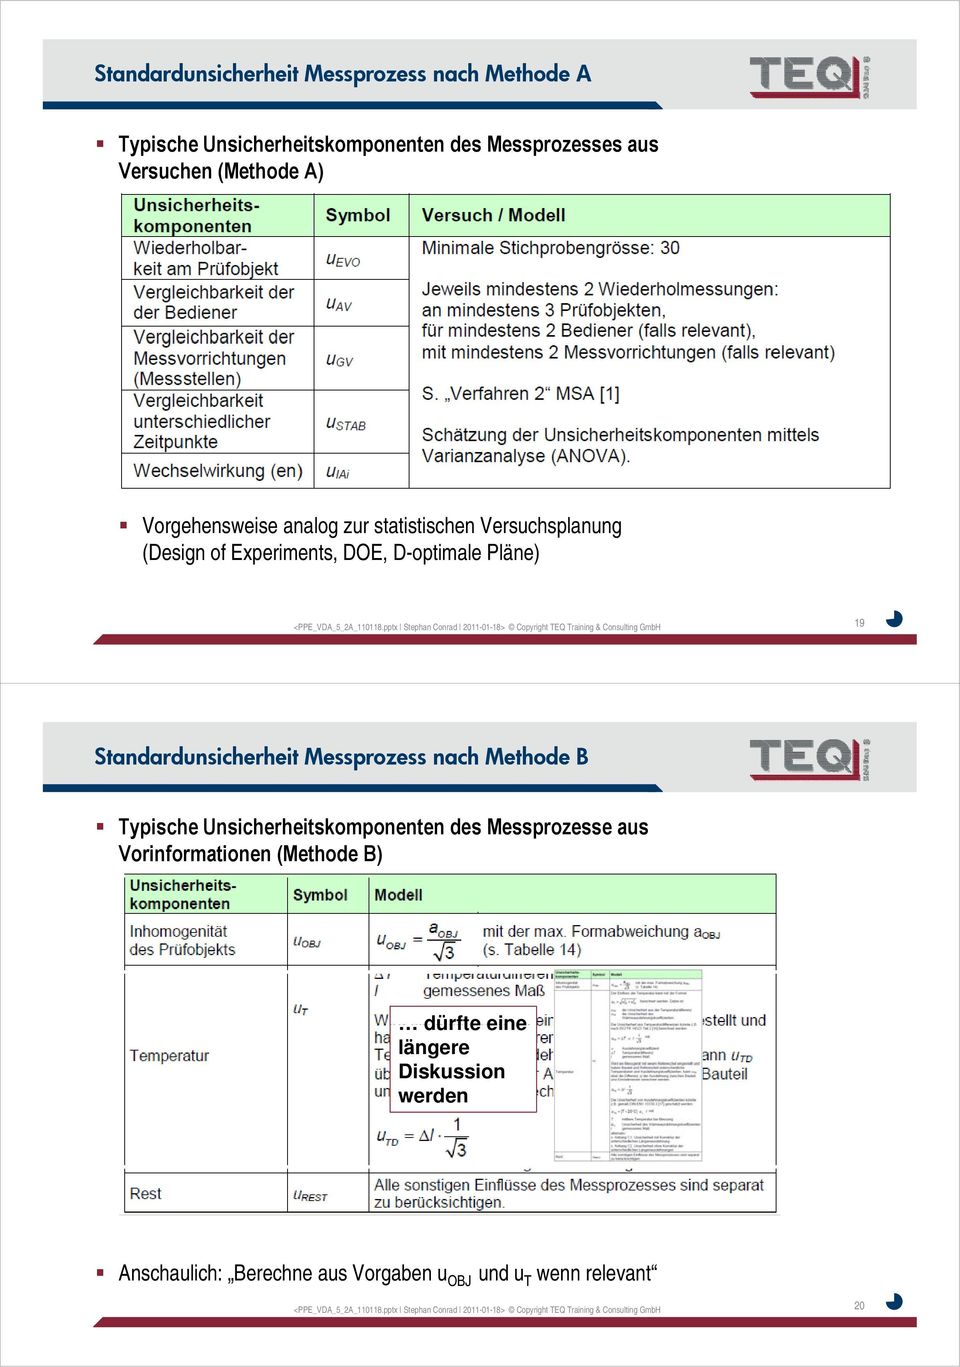 pptx Stephan Conrad 011-01-18> Copyright TEQ Training & Consulting GmbH 19 Standardunsicherheit Messprozess nach Methode B Typische Unsicherheitskomponenten des